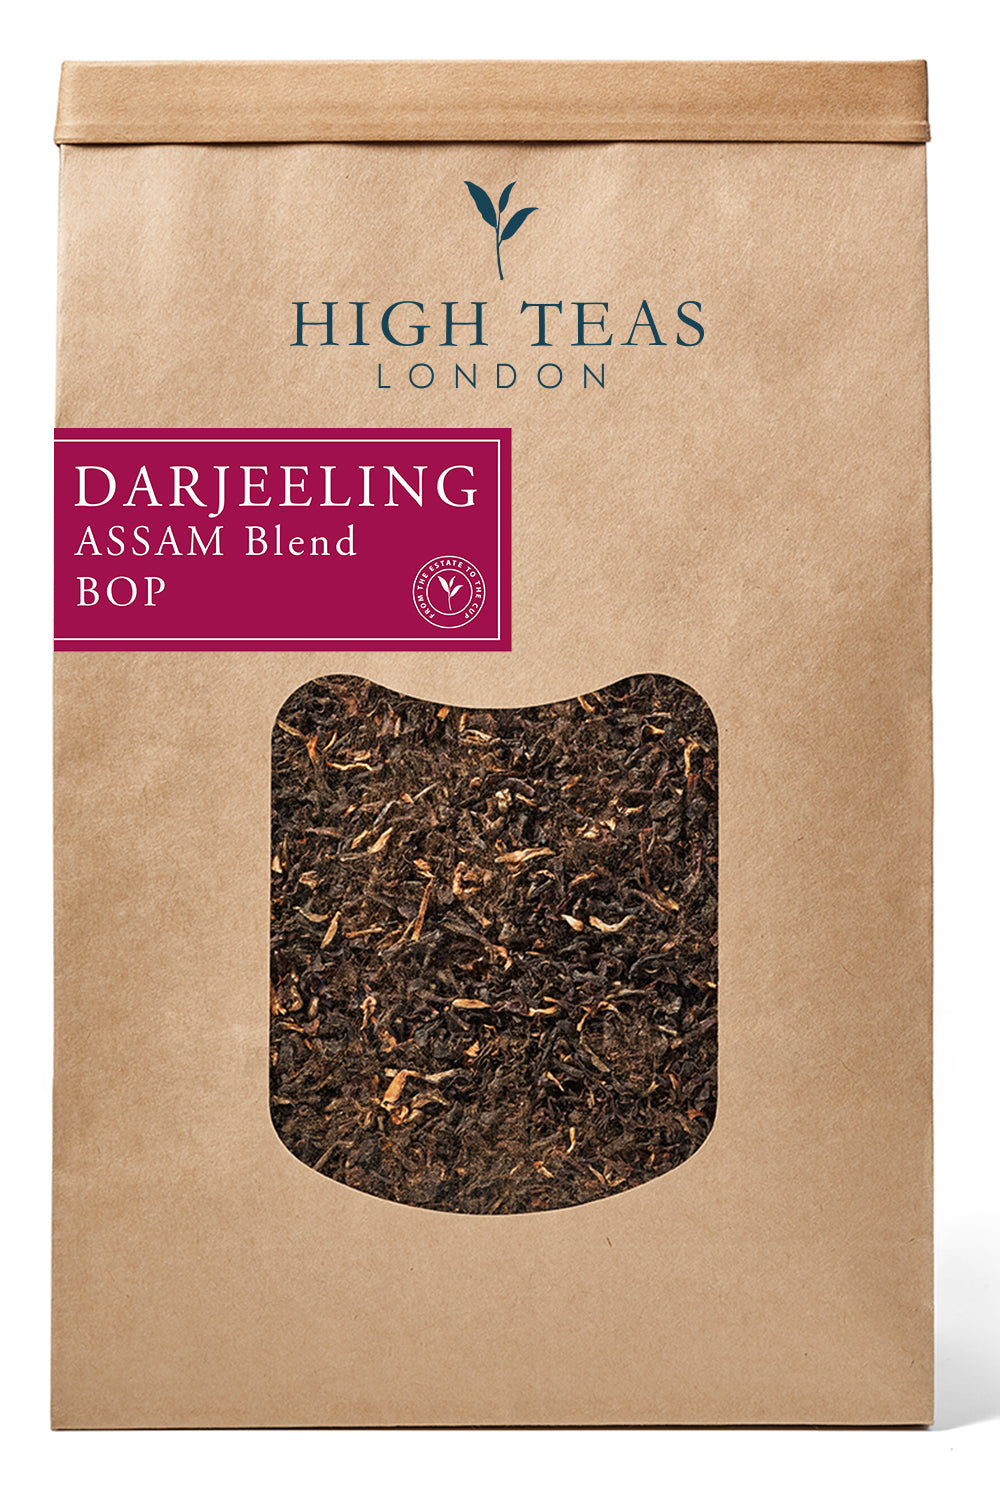 Darjeeling/Assam Blend BOP - Our Brunch Tea-500g-Loose Leaf Tea-High Teas